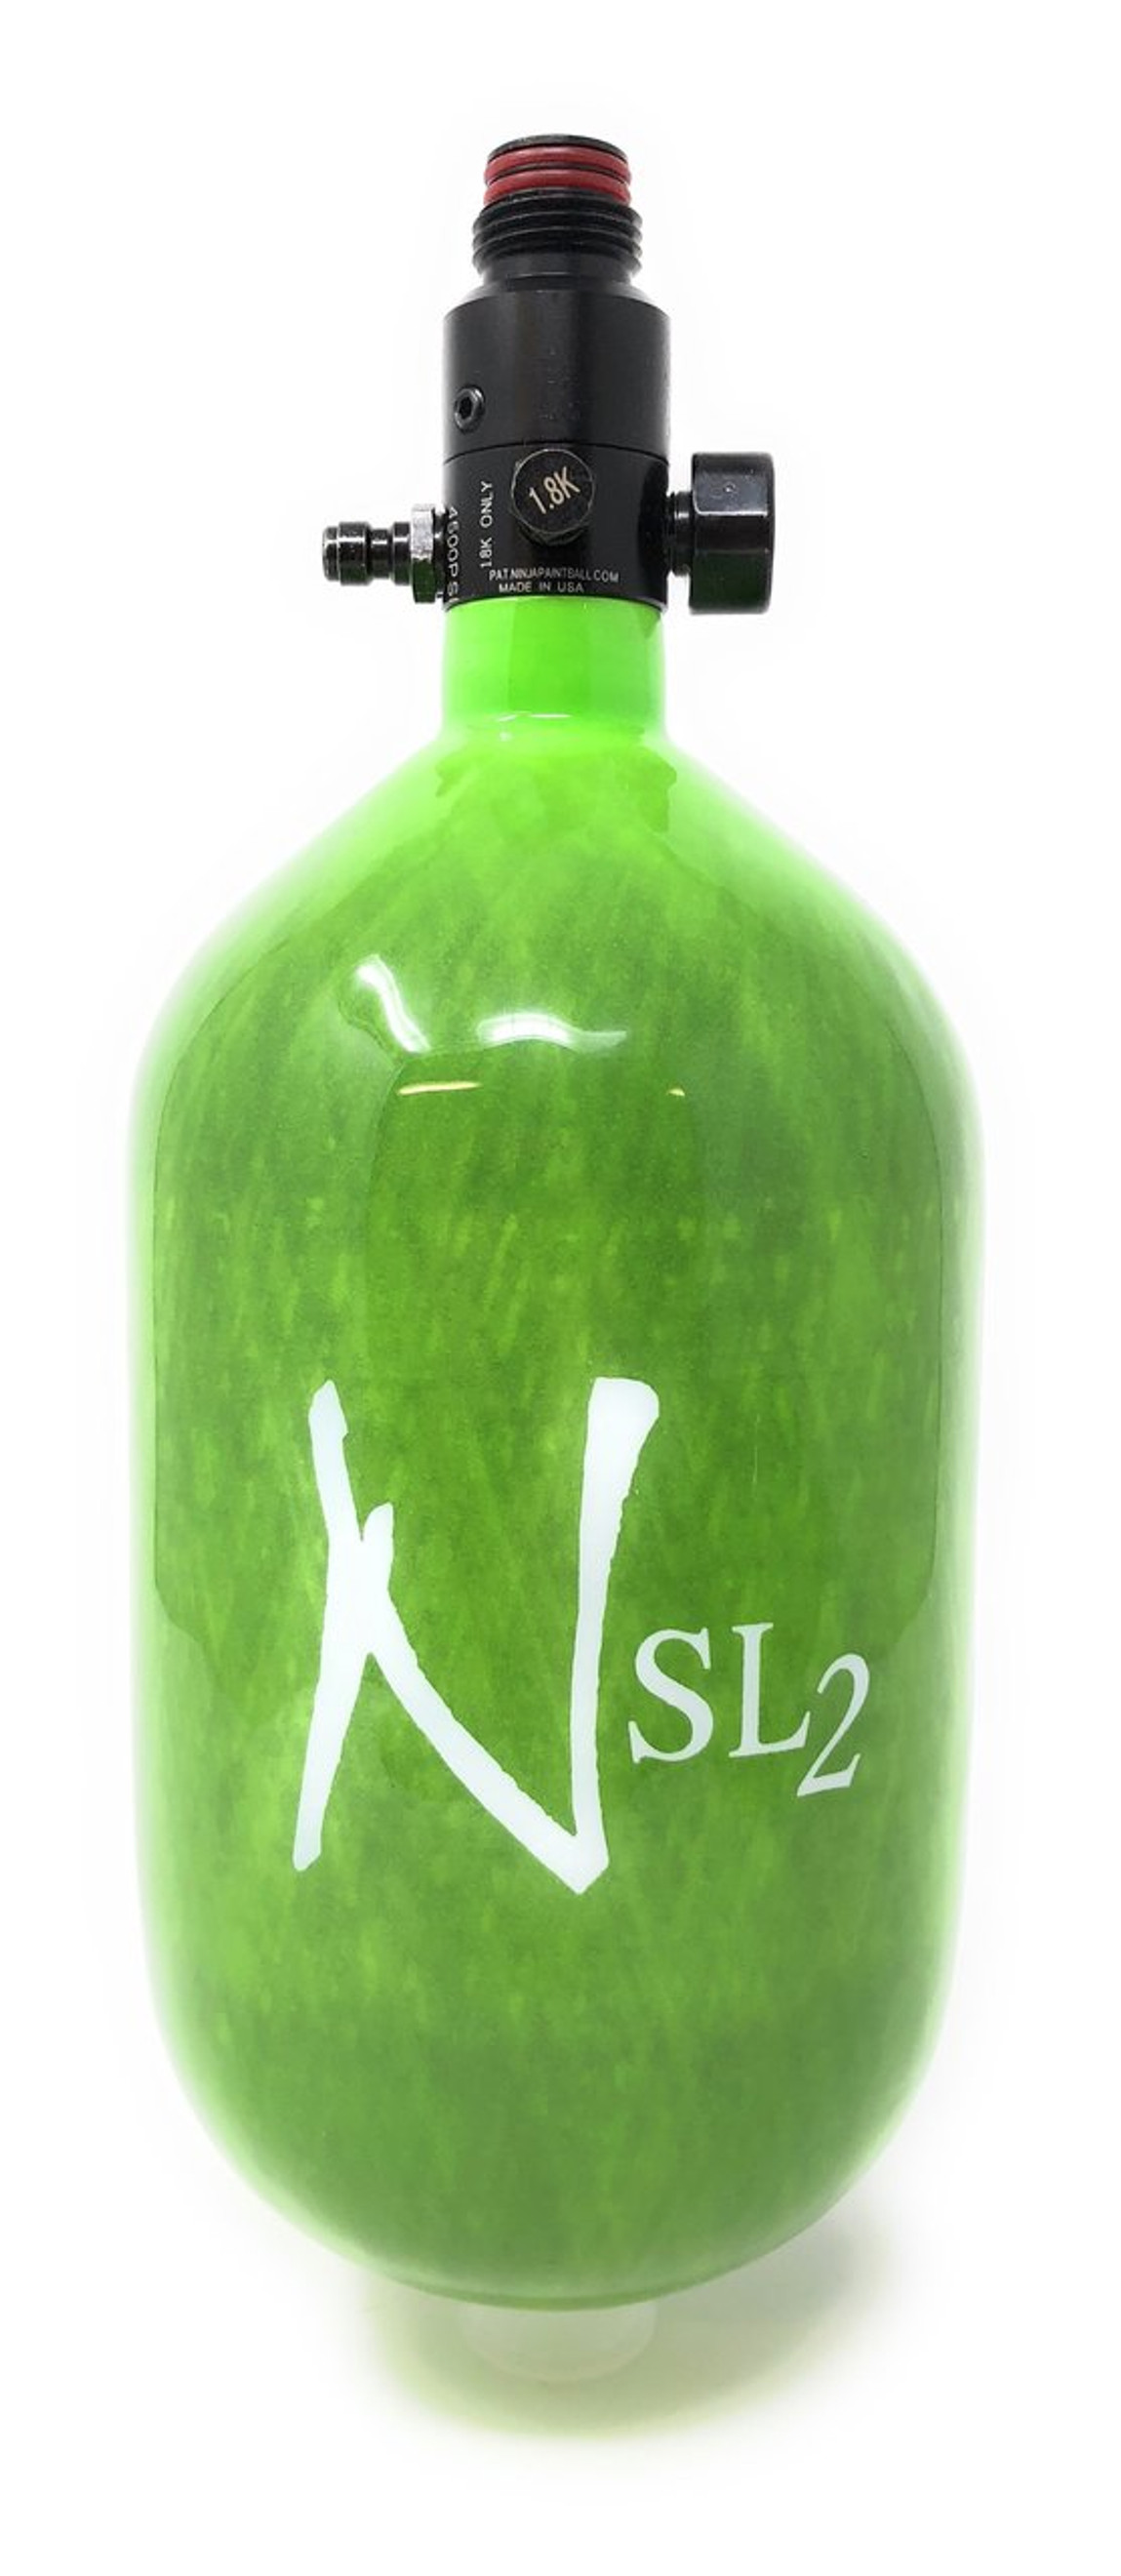 Ninja 45/4.5k Super Lite 2 cf PRO V2 SLP Regulator - Lime